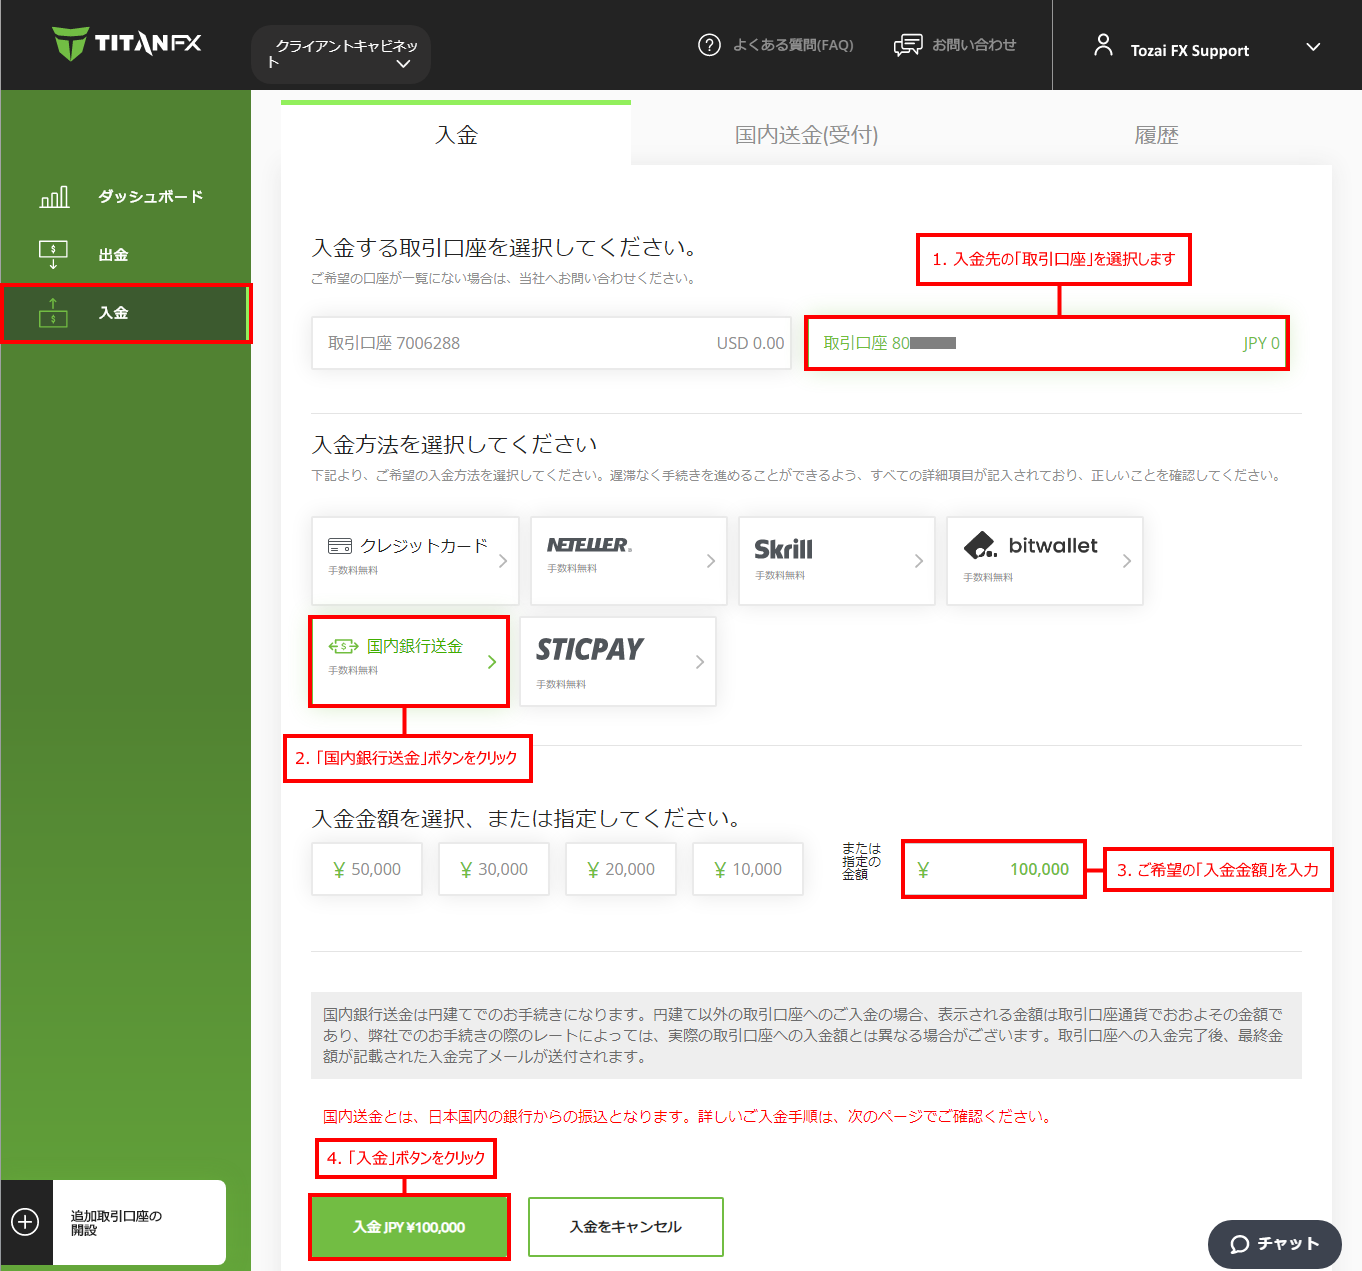 Titan FX (タイタン FX)の国内振込（日本国内の金融機関）による入金情報の入力画面